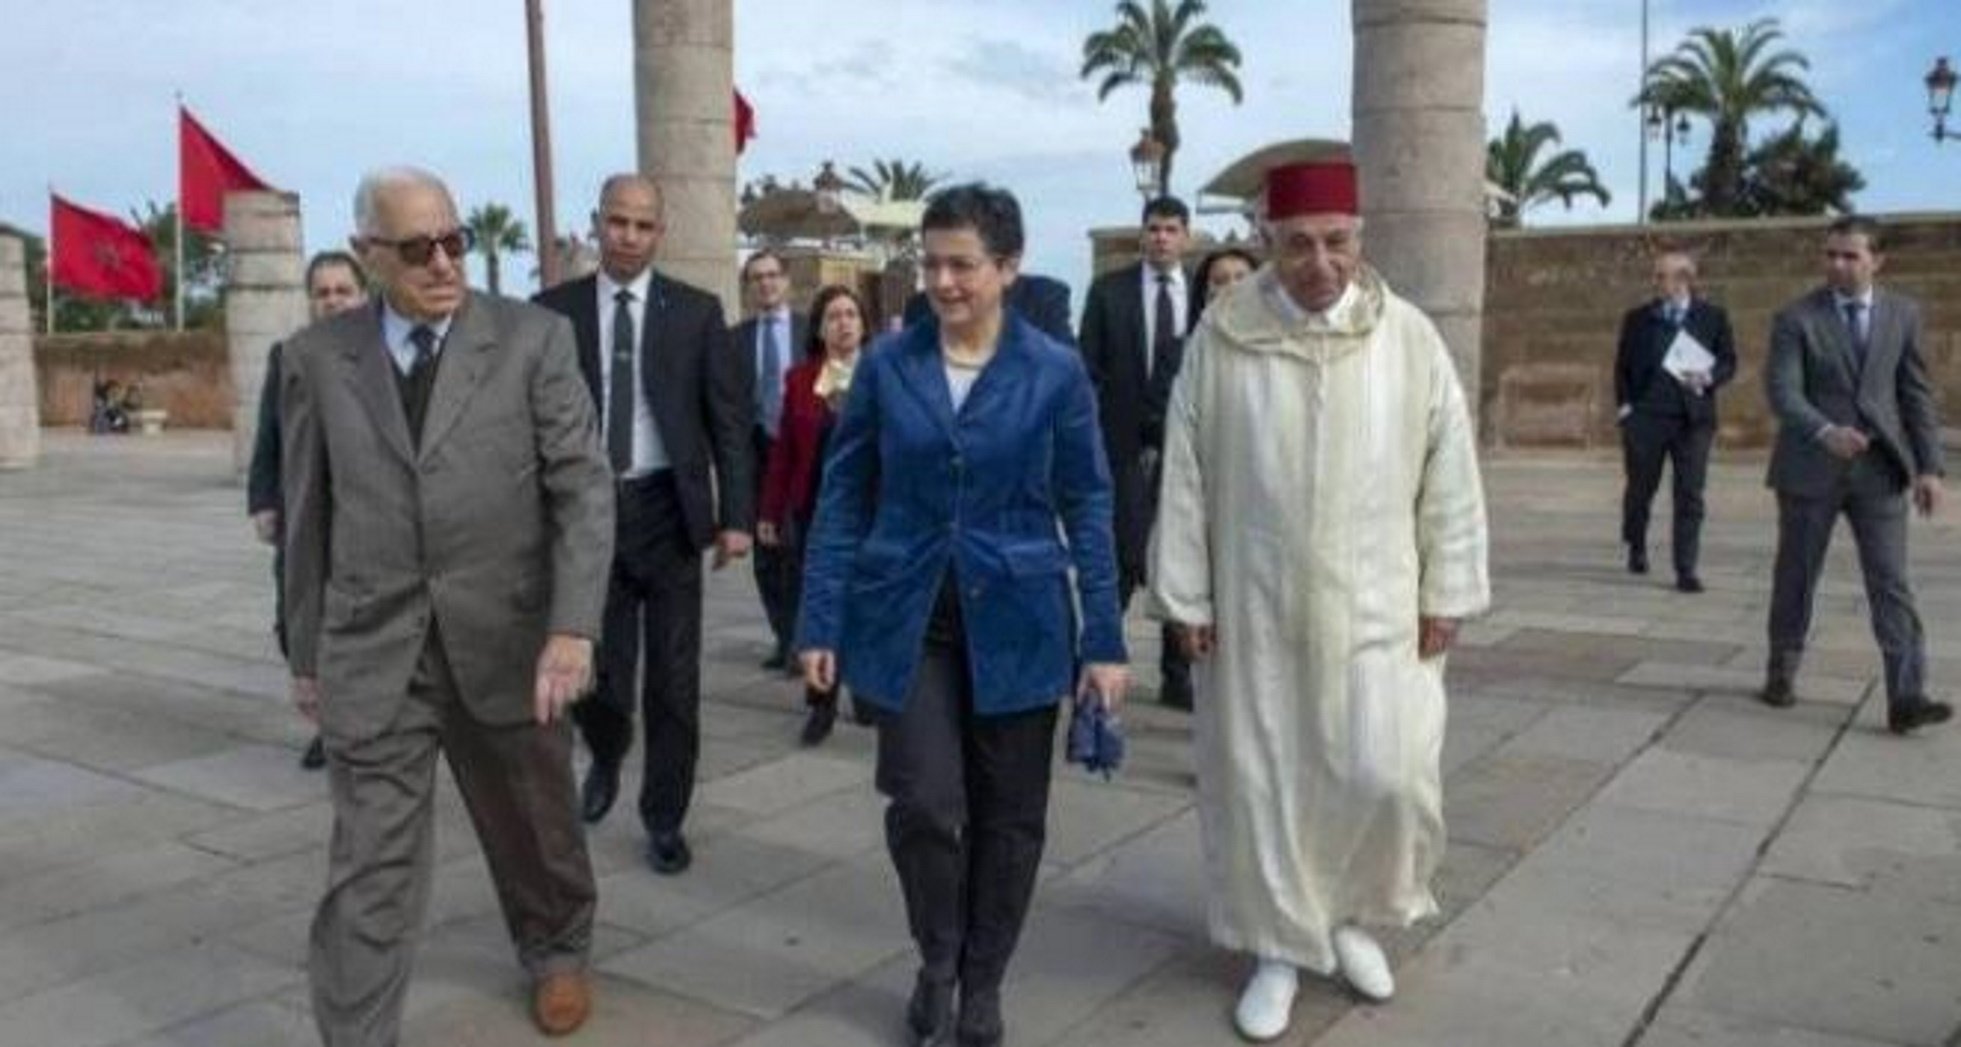 Marruecos lanza una indirecta a España vía prensa (y mete a Puigdemont)